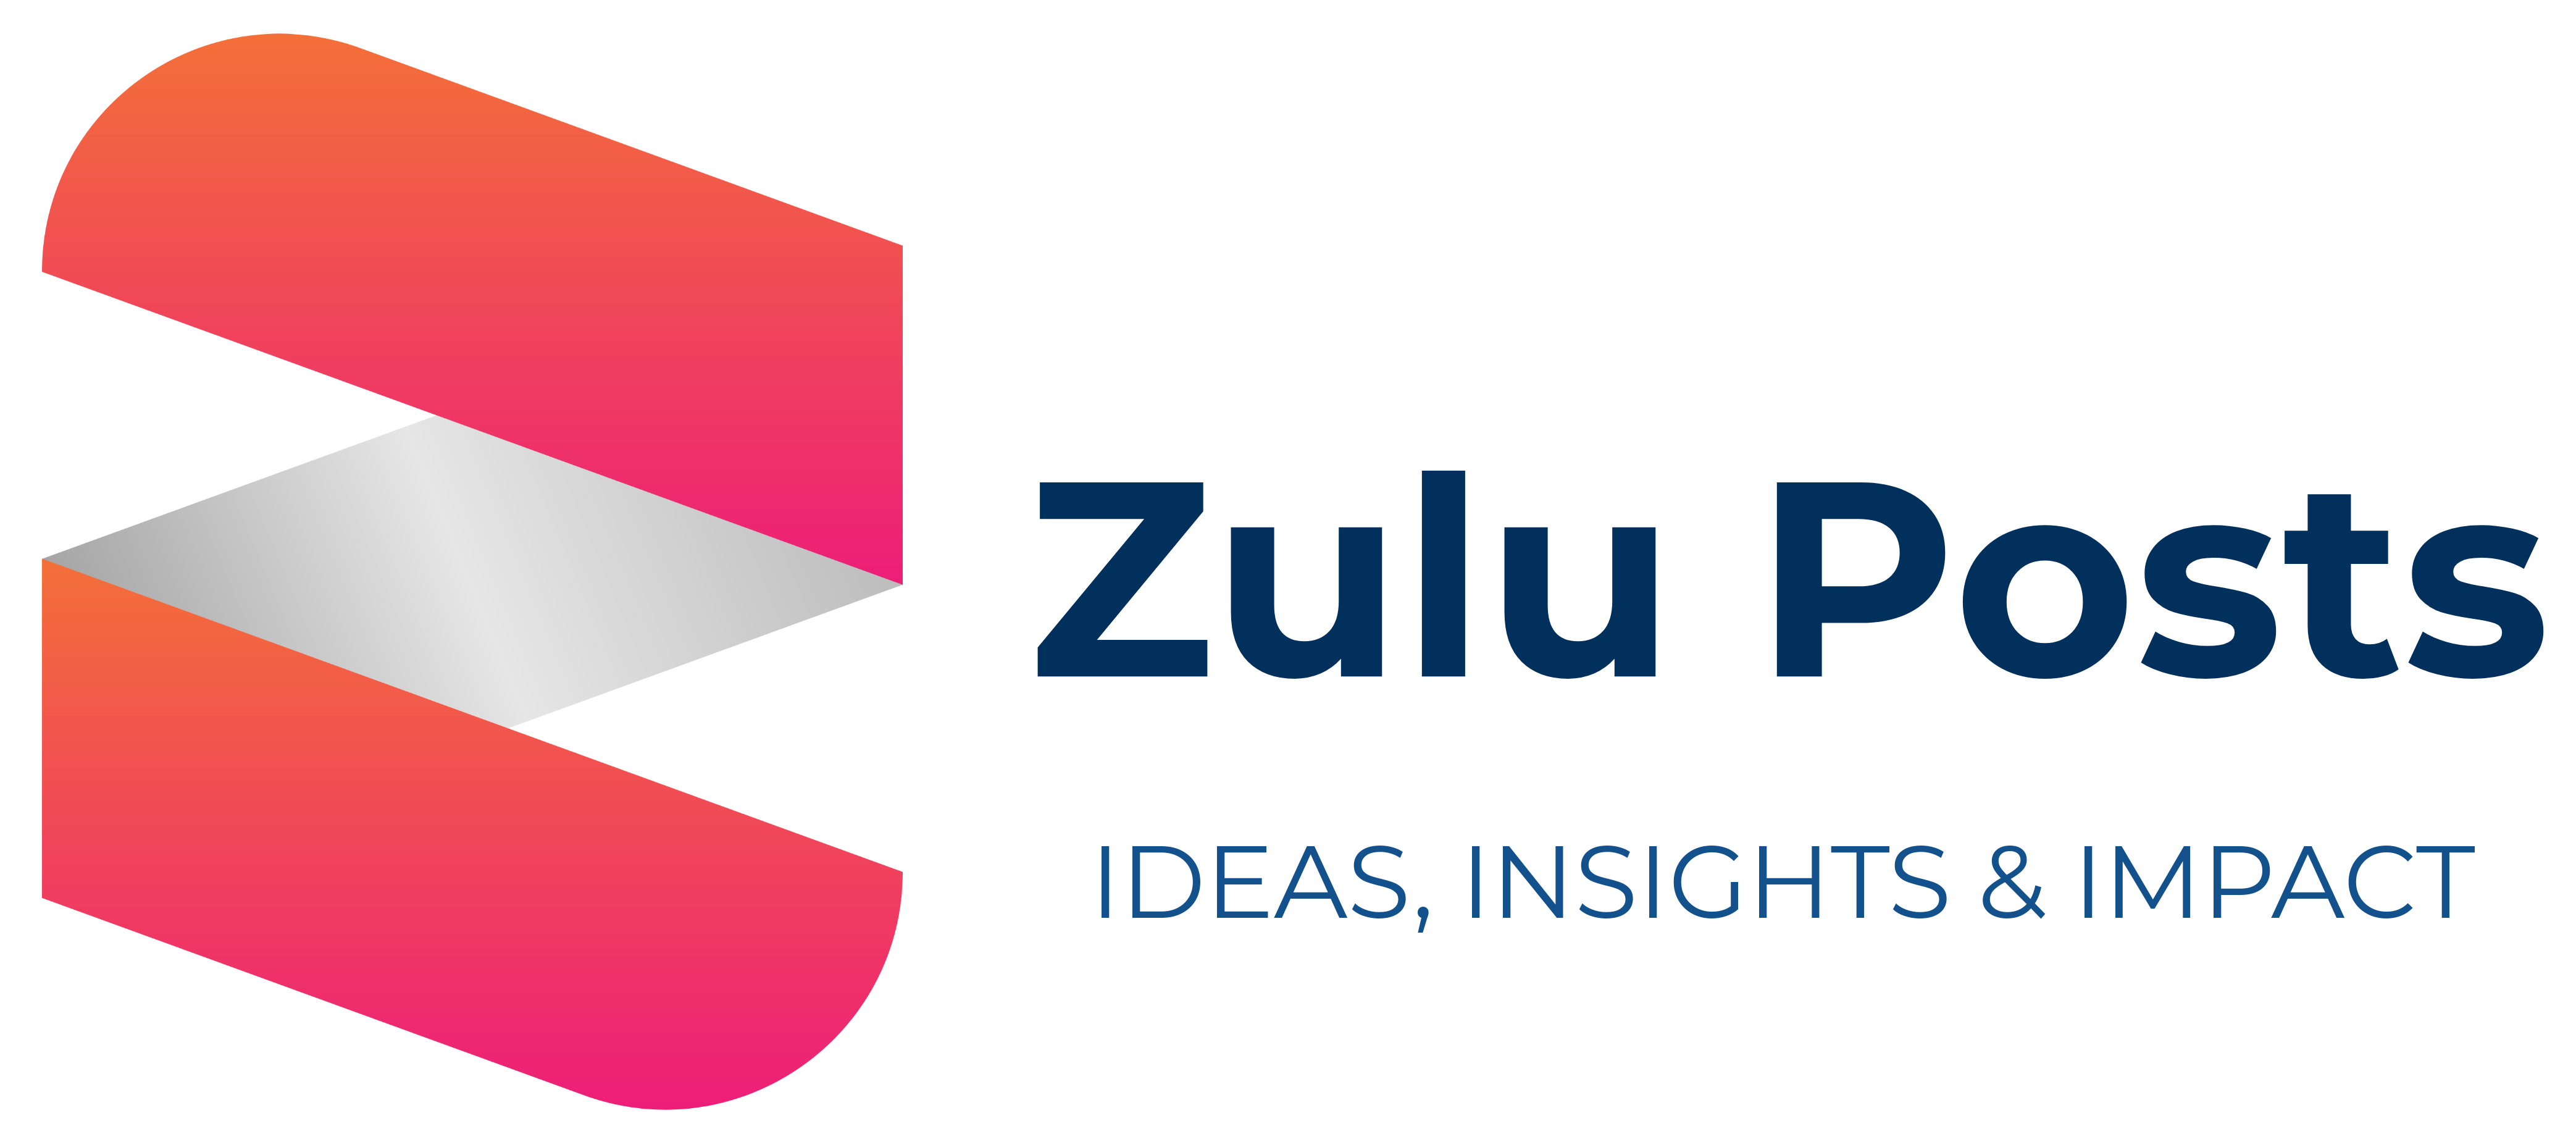 Zulu Posts